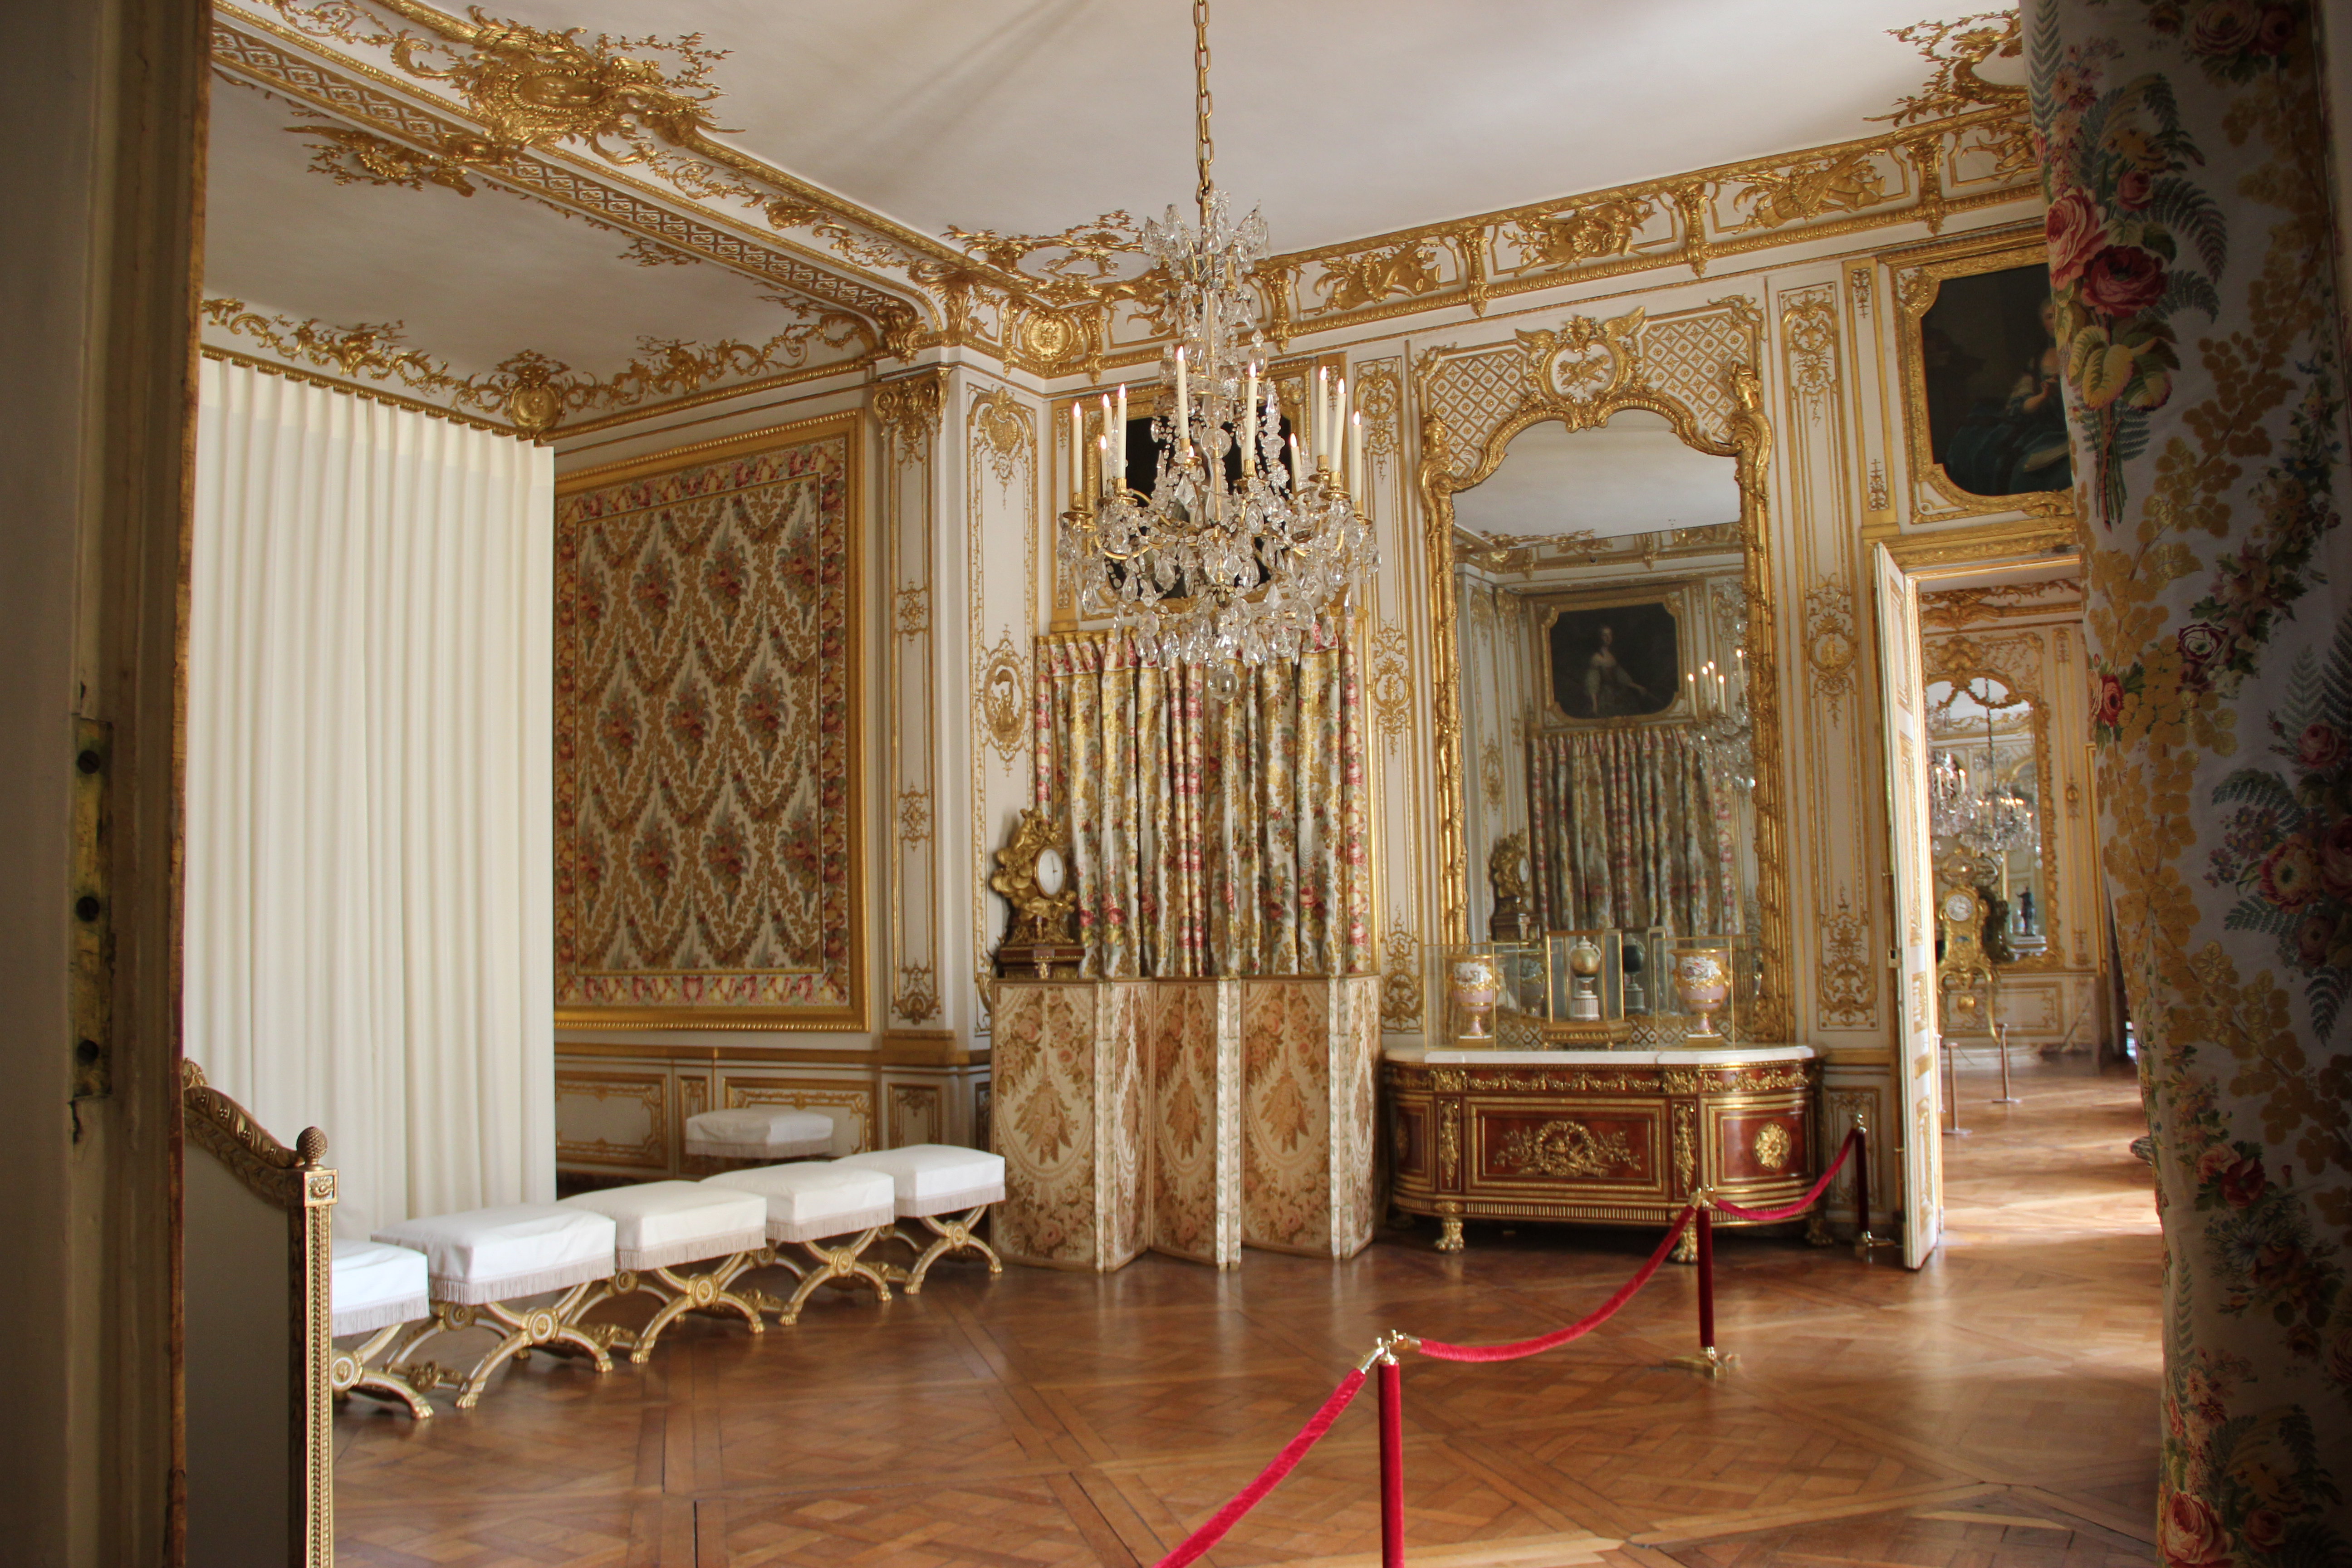 凡尔赛宫内部图片